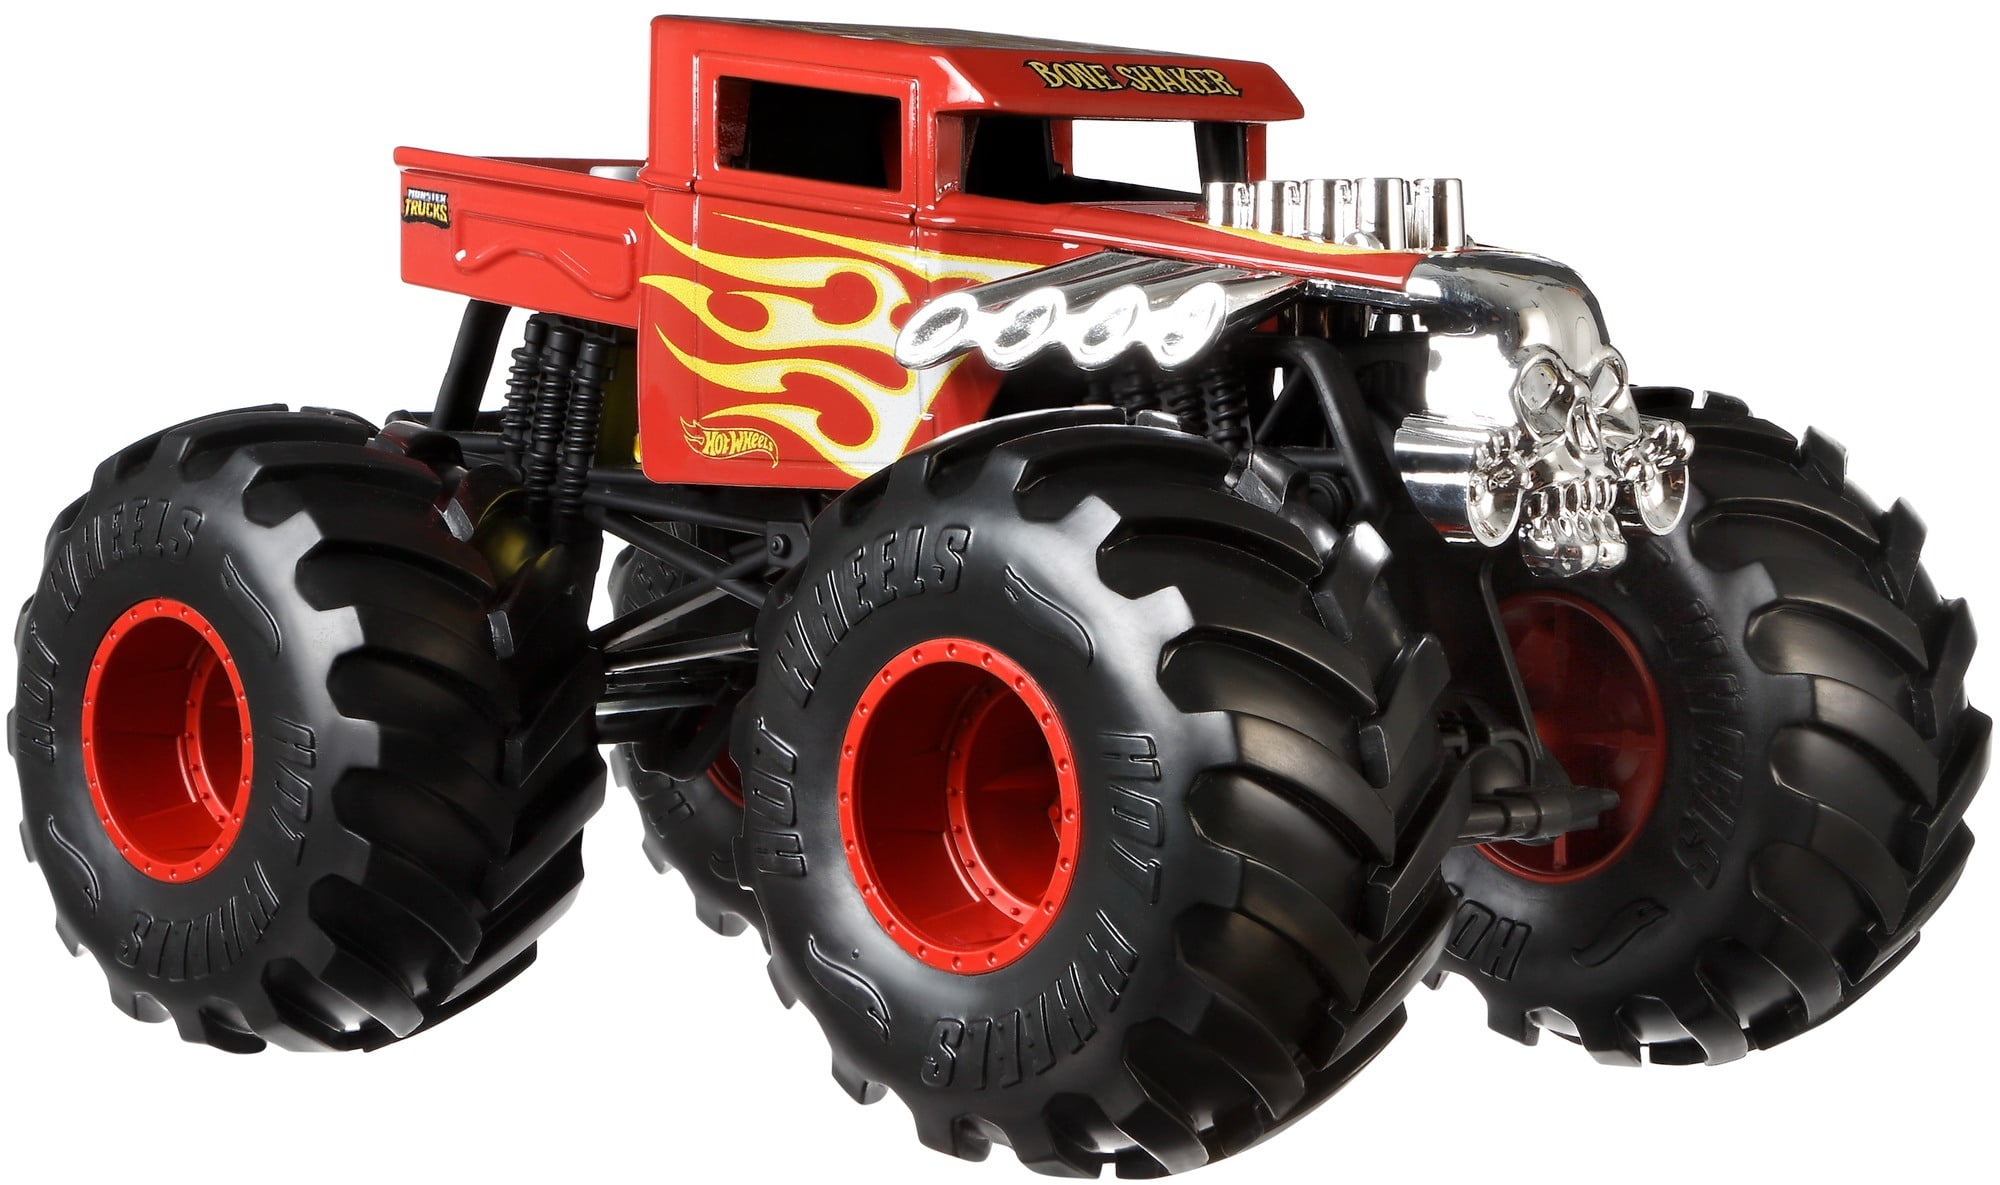 Hot Wheels Monster Trucks 1:24 Scale Bone Shaker Truck Play